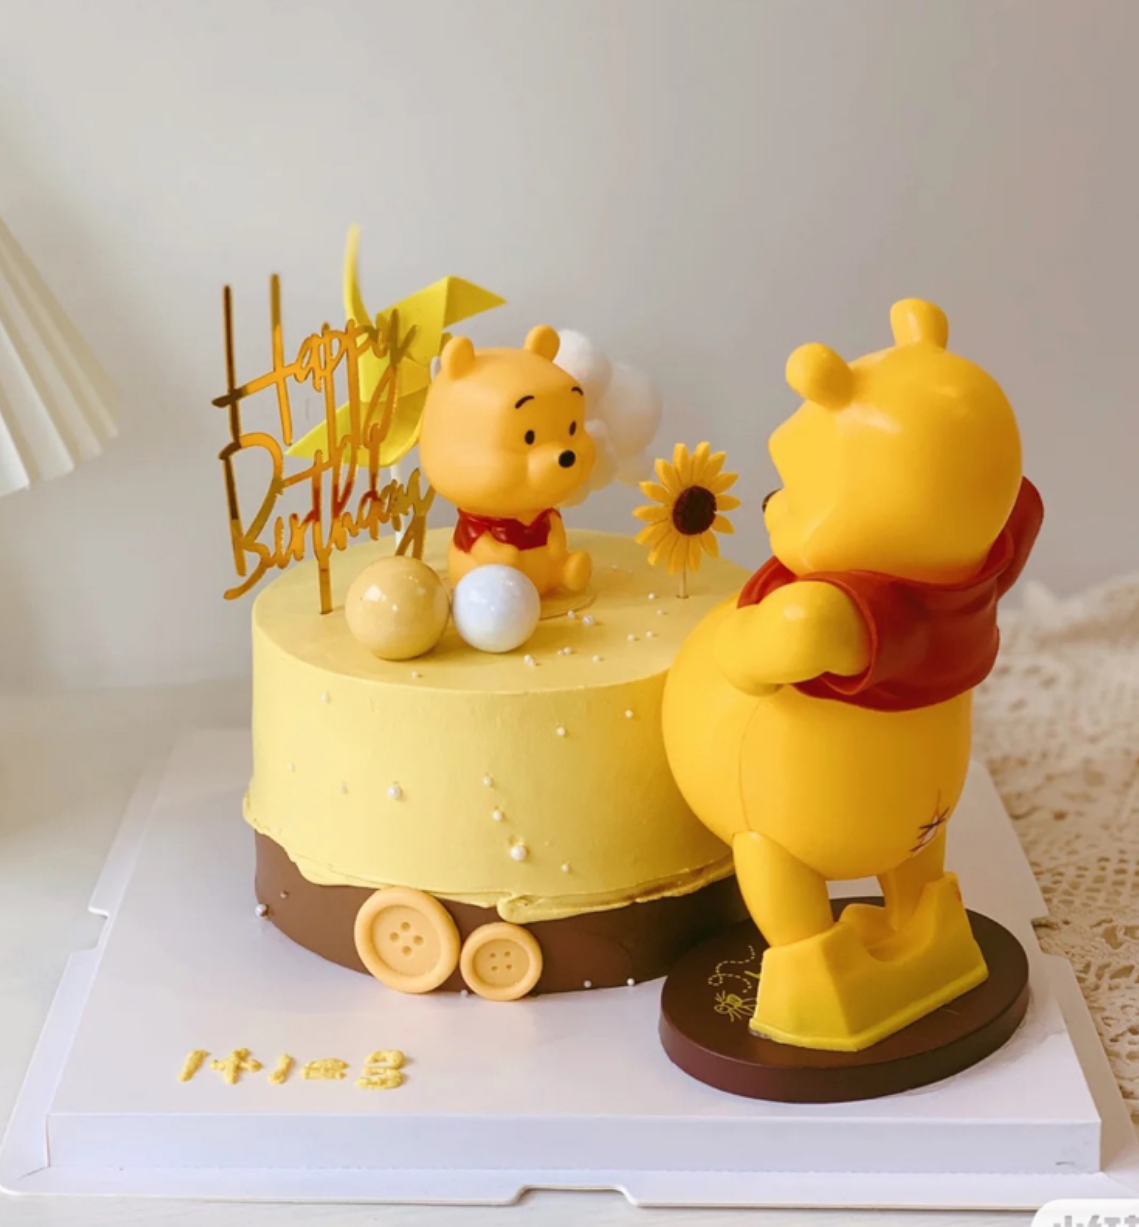 大肚子维尼熊蛋糕装饰摆件卡通可爱小熊公仔孕妇生日烘焙装扮插件